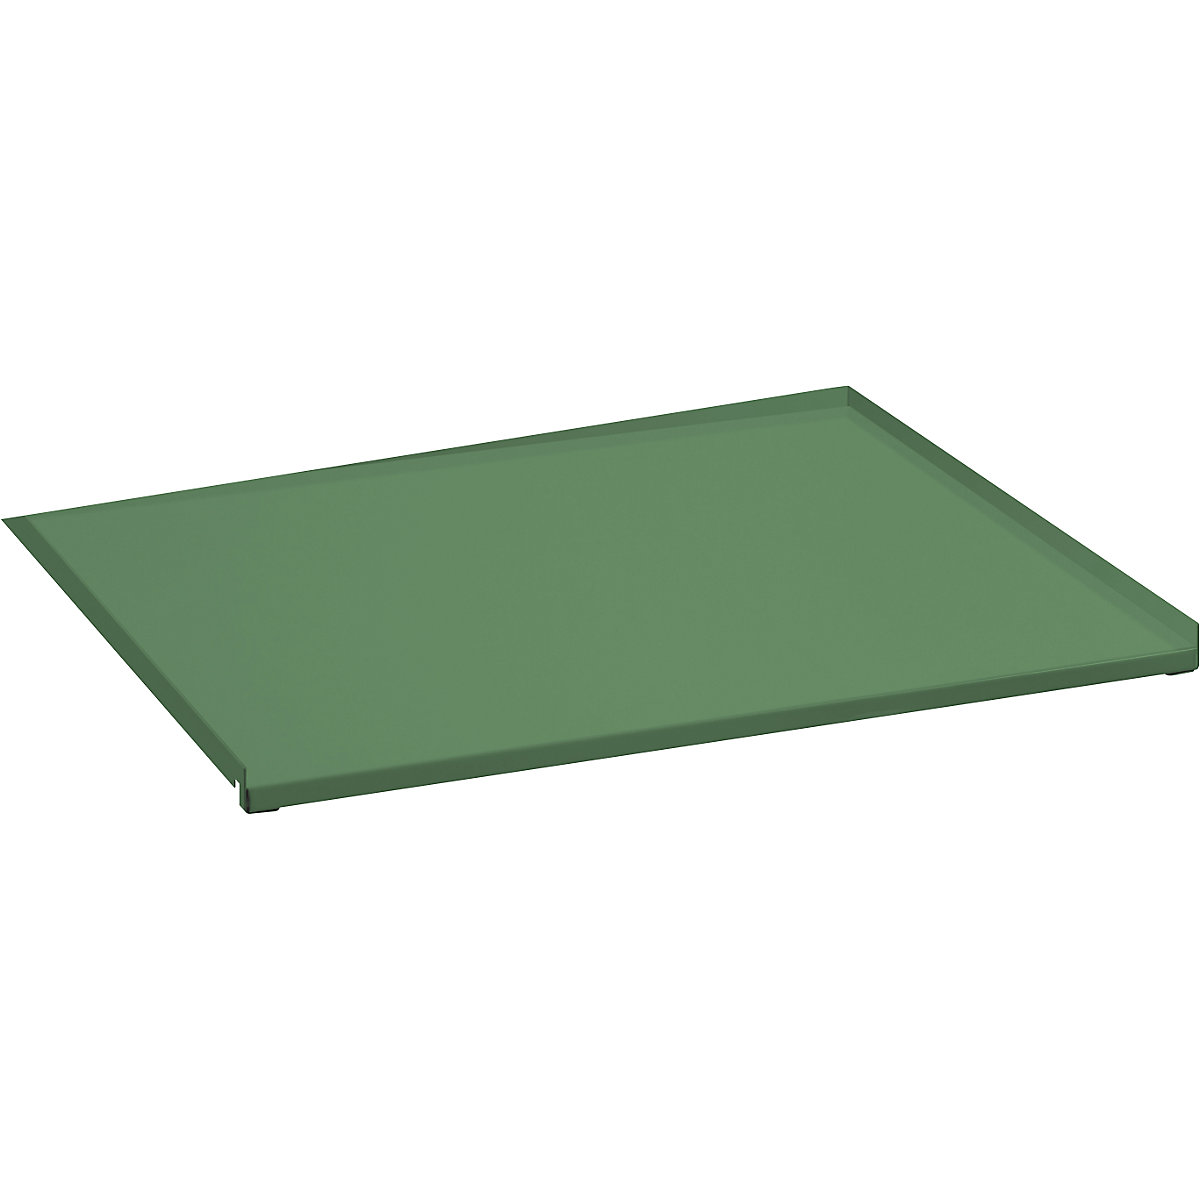 Blat din tablă pentru cadru extensibil – LISTA, extindere completă, pentru lăț. x ad. 890 x 860 mm, verde reseda-2